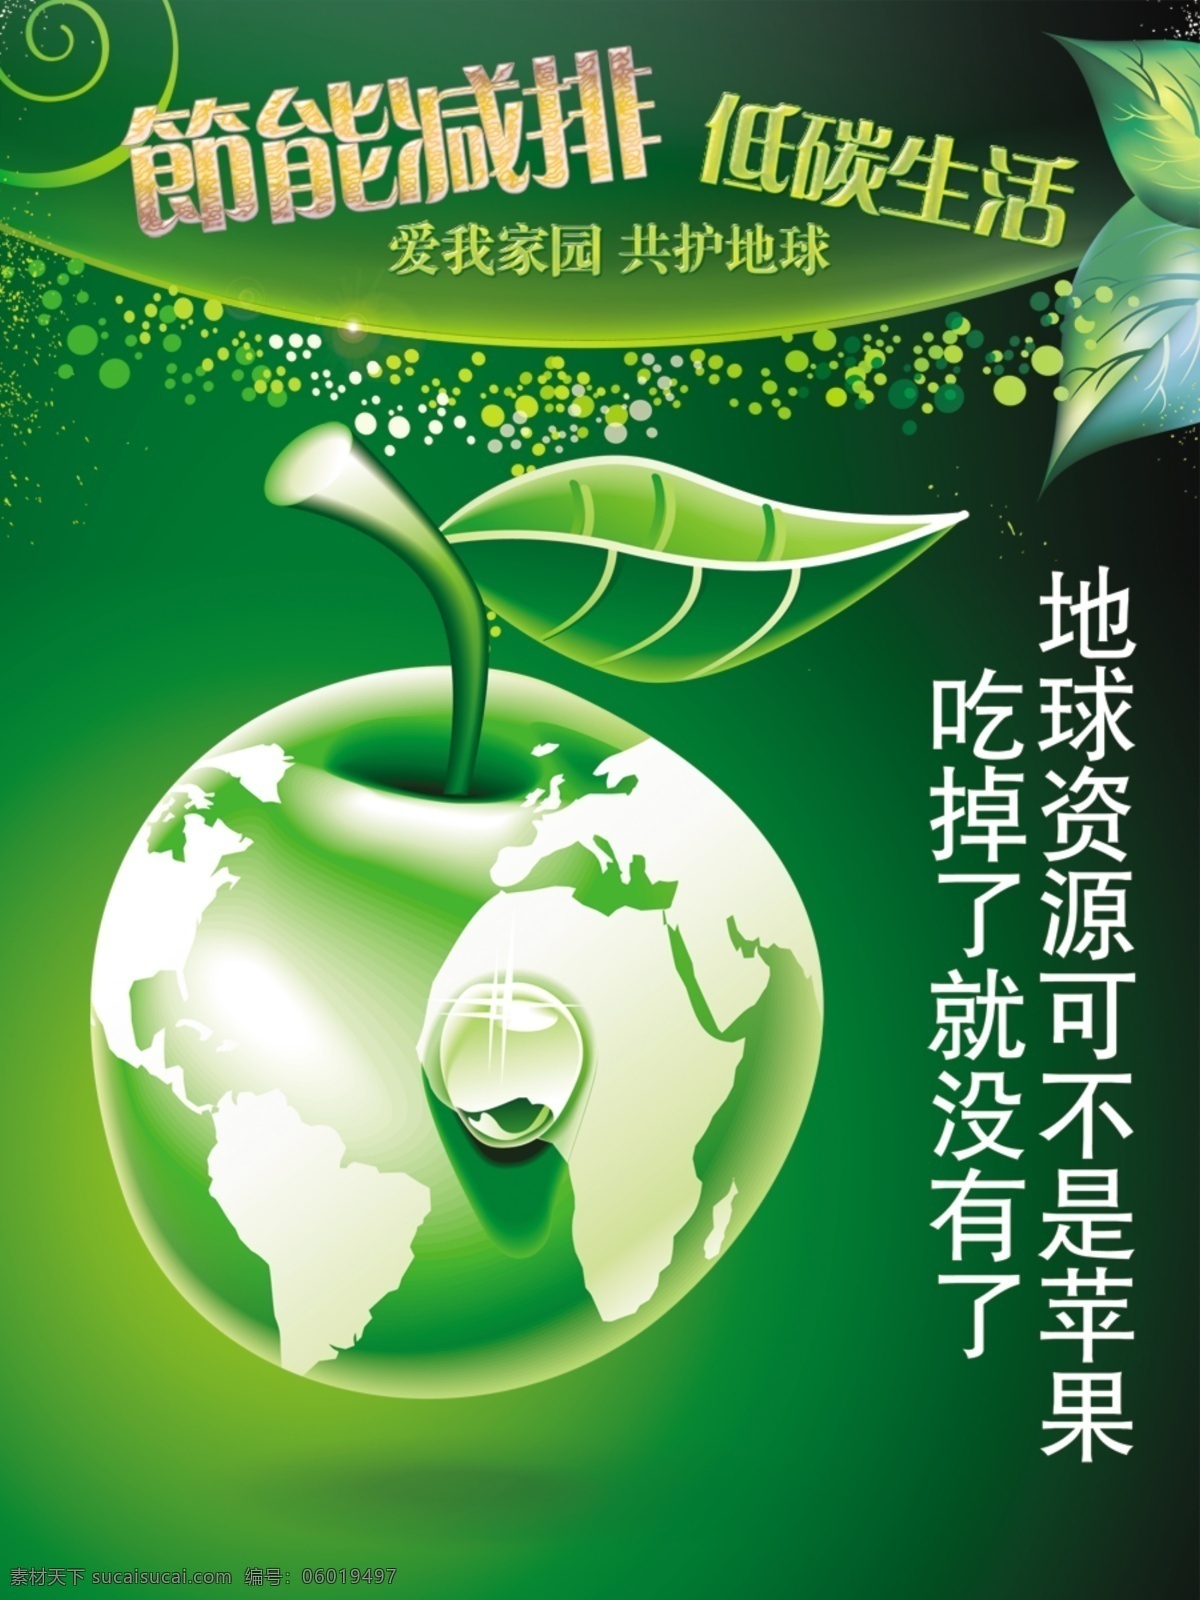 低碳生活 公益广告 节能减排 抽象地球 绿色苹果创意 水滴 带叶苹果 绿色风格 设计模板 抽象树叶 圆点 平面气泡 抽象氧气 地球苹果比喻 公益类